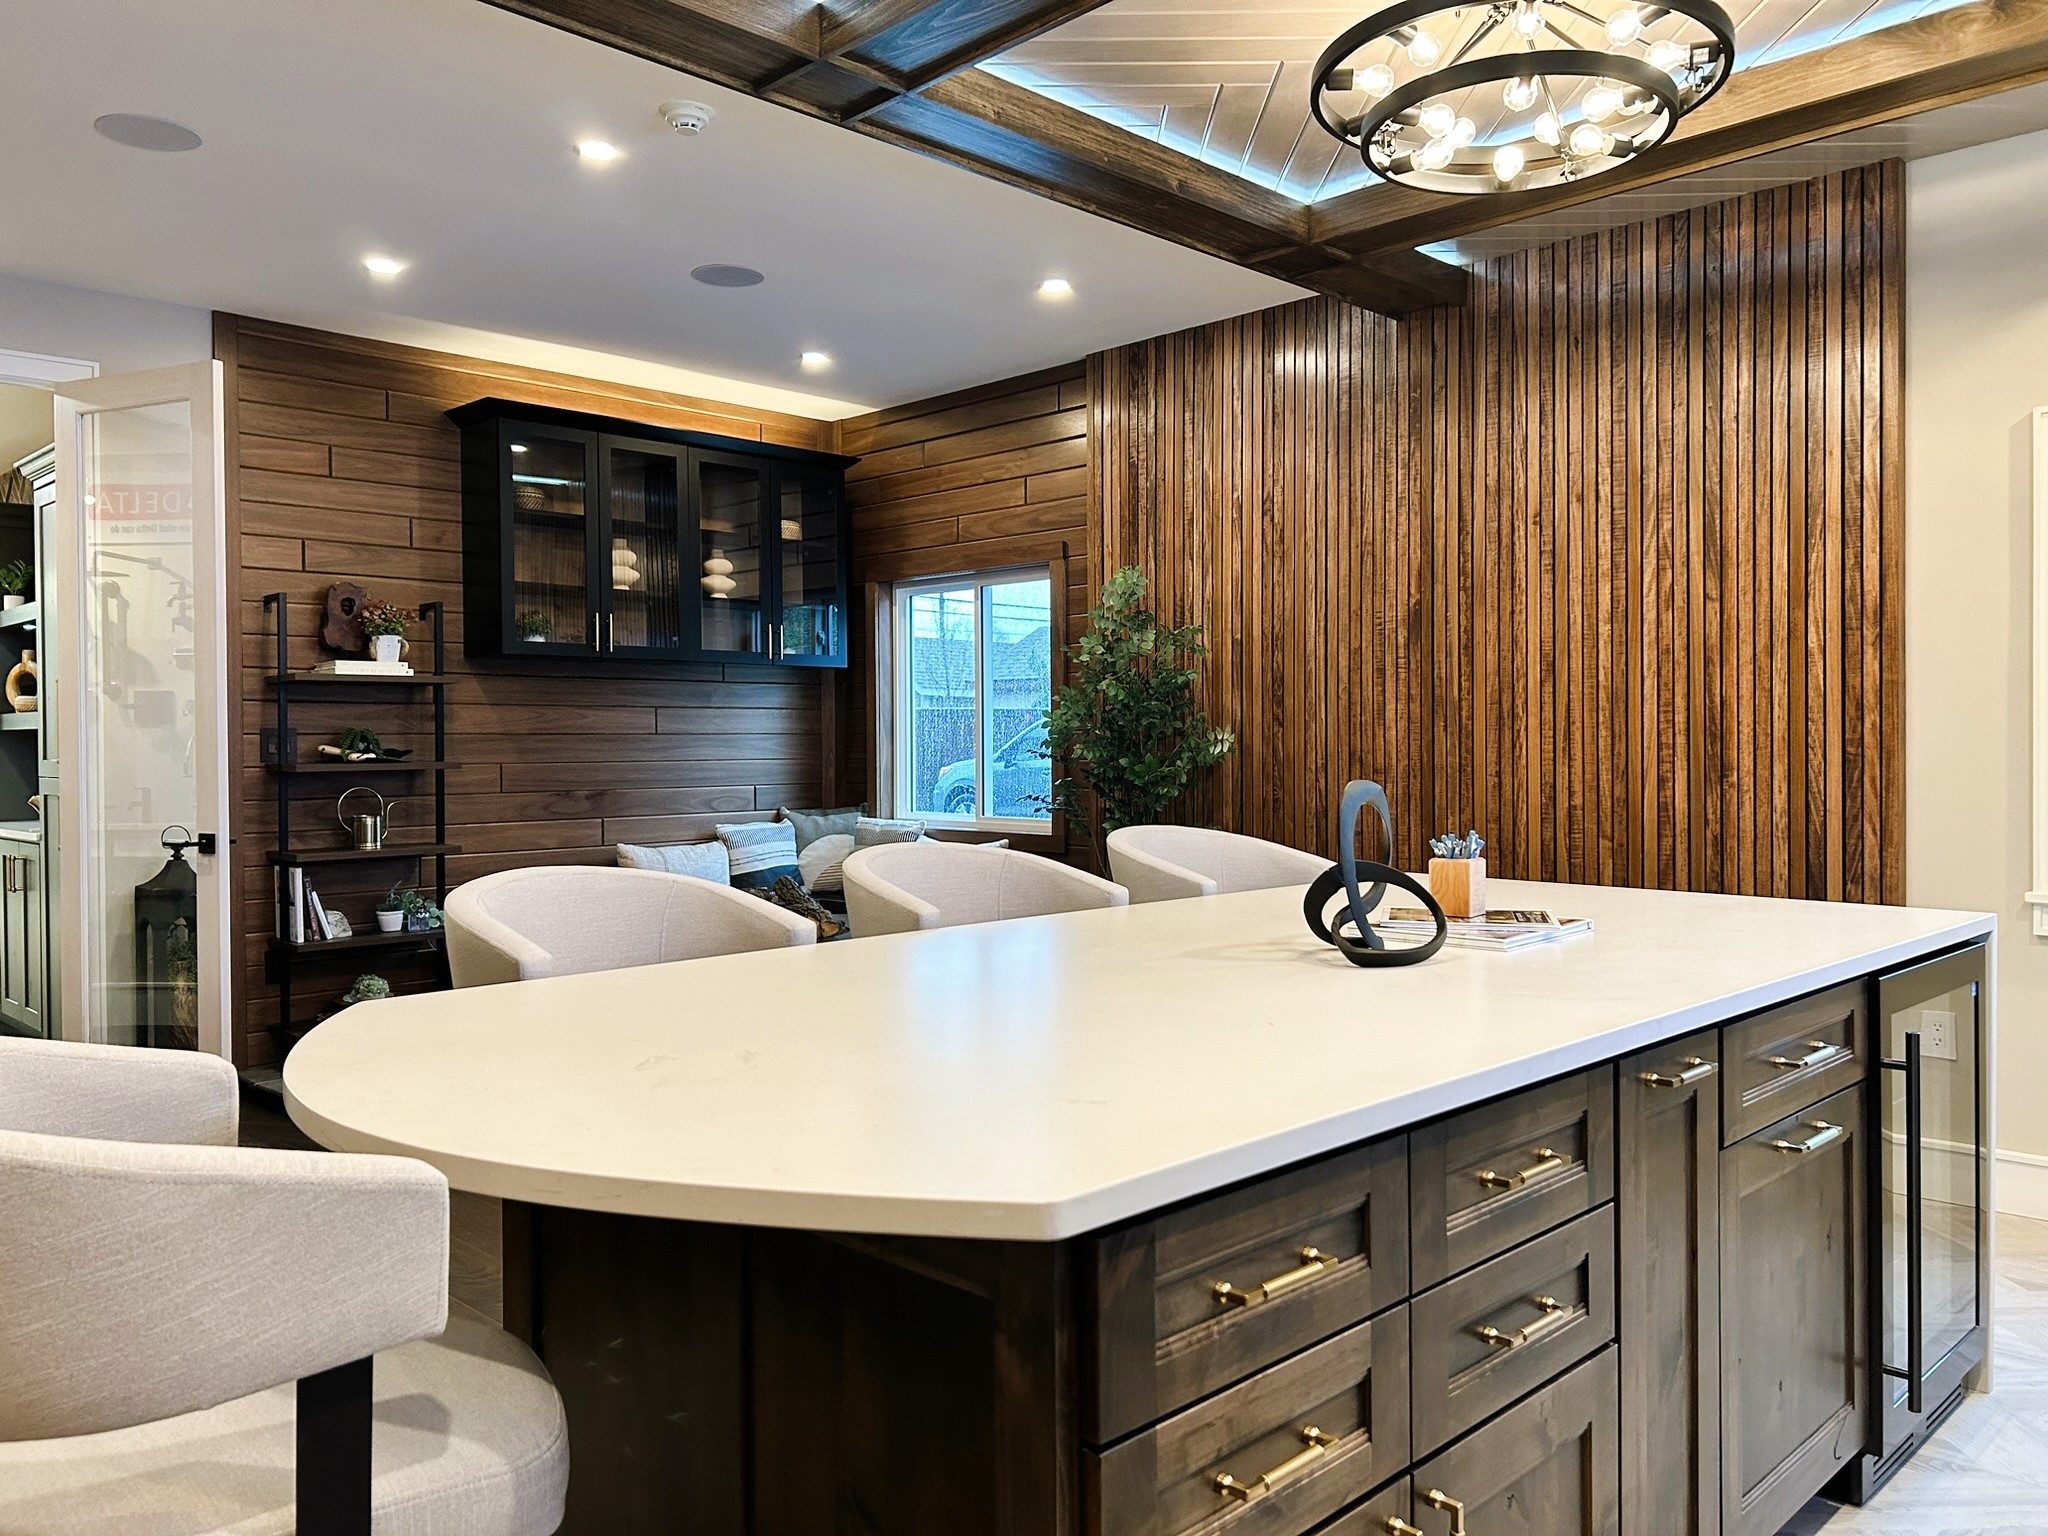 Showroom with kitchen island